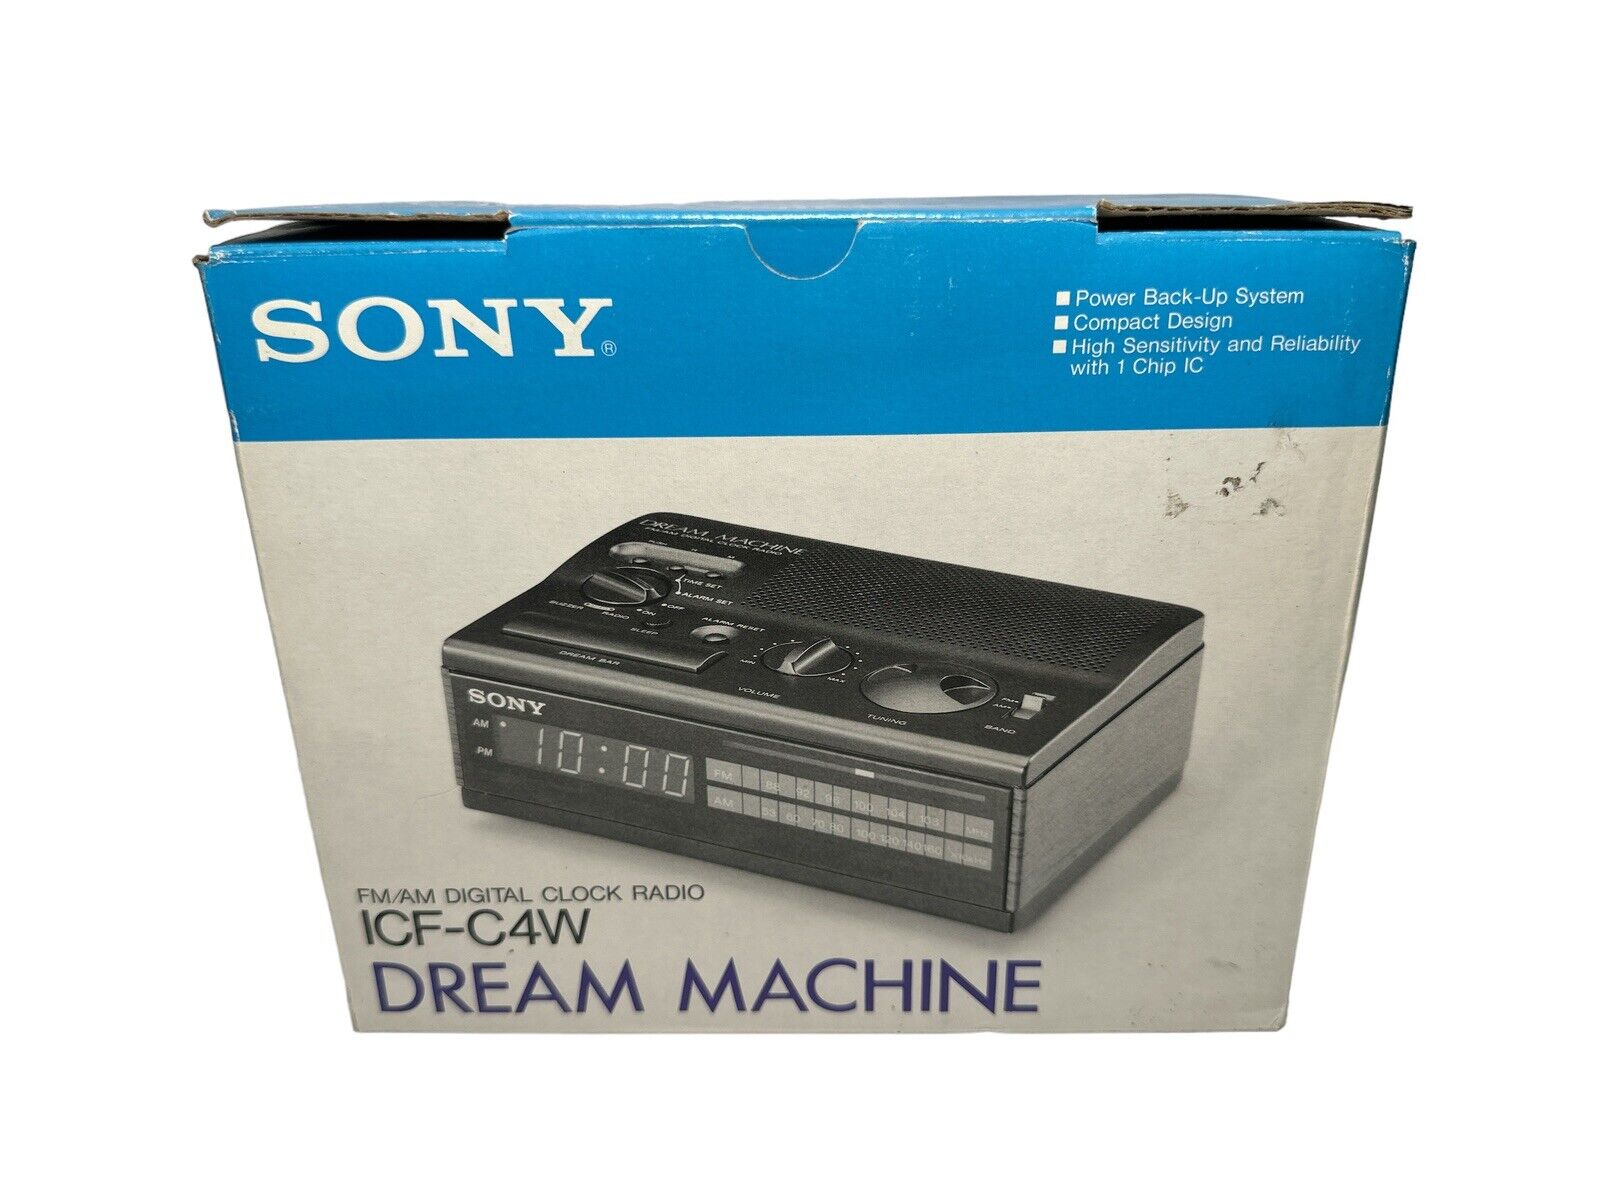 New Sony Dream Machine AM/FM Alarm Digital Clock Radio Wood Grain Model ICF-C4W